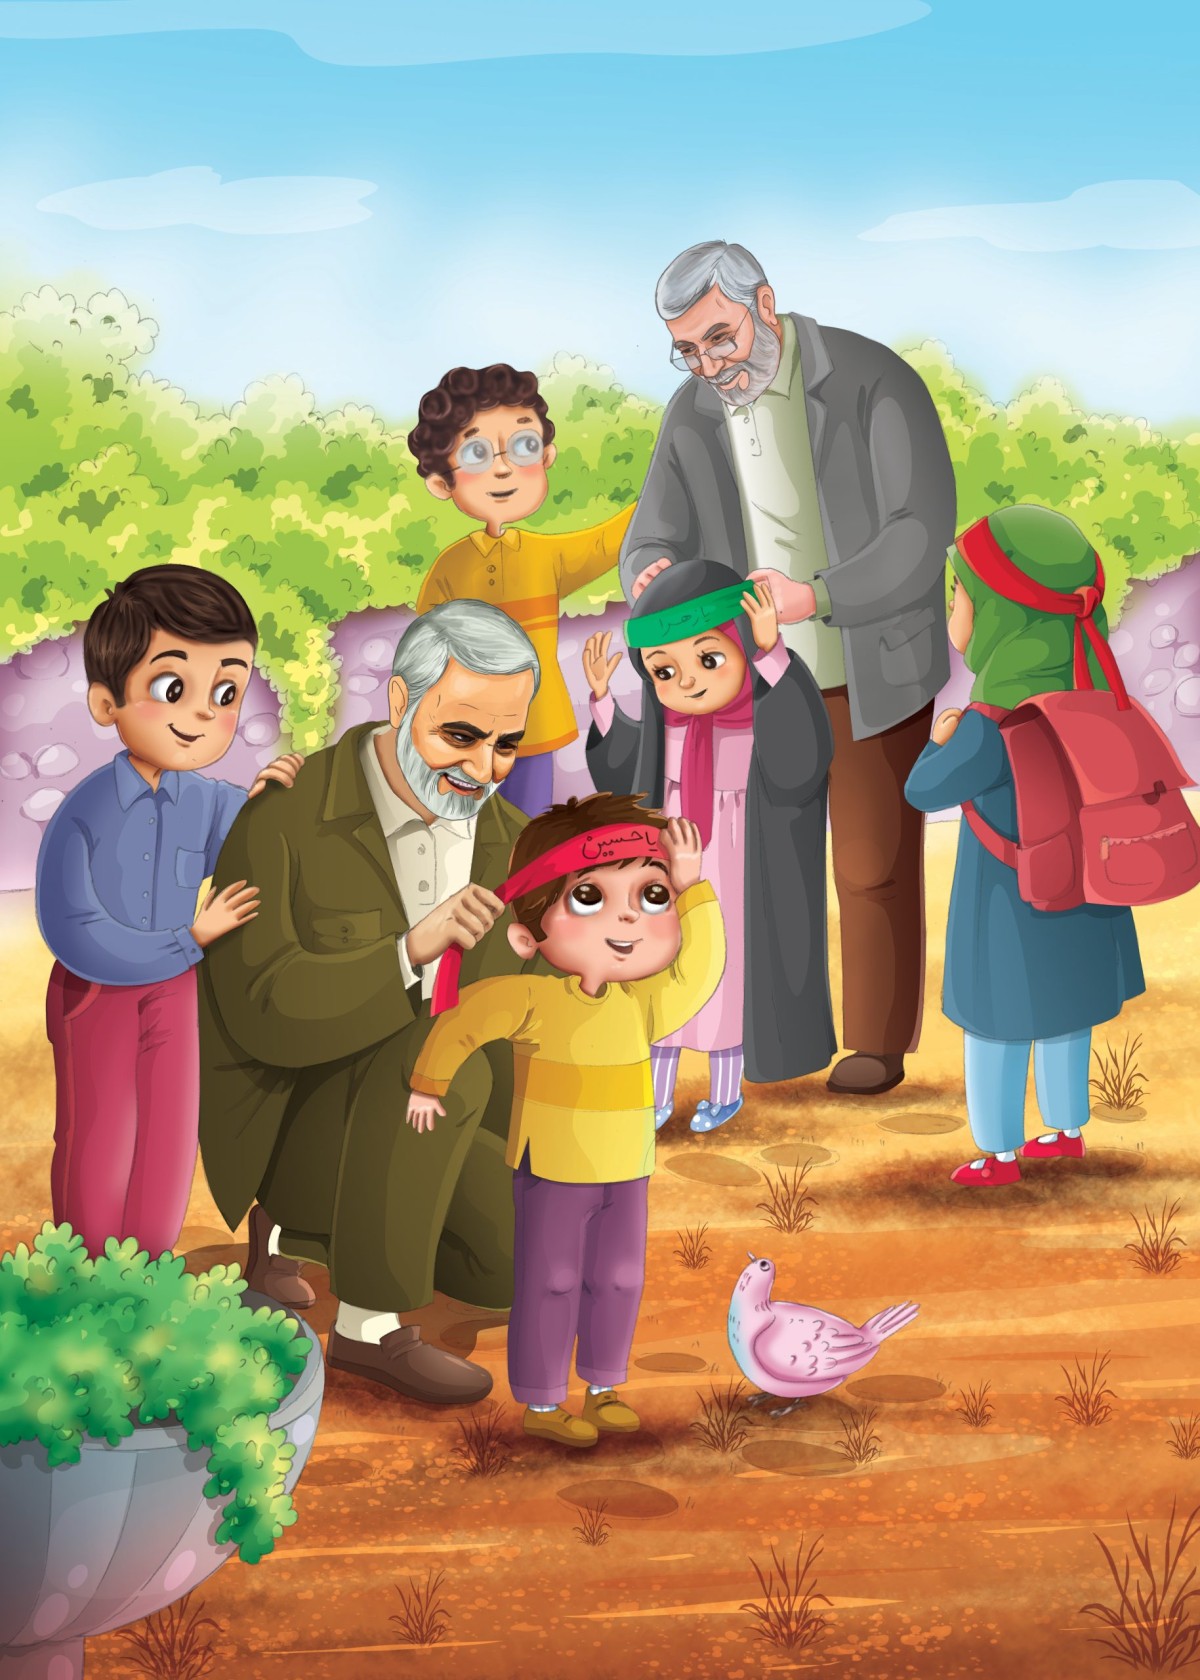  مجموعة رسومات أطفال ” حاج قاسم وأبو مهدي “